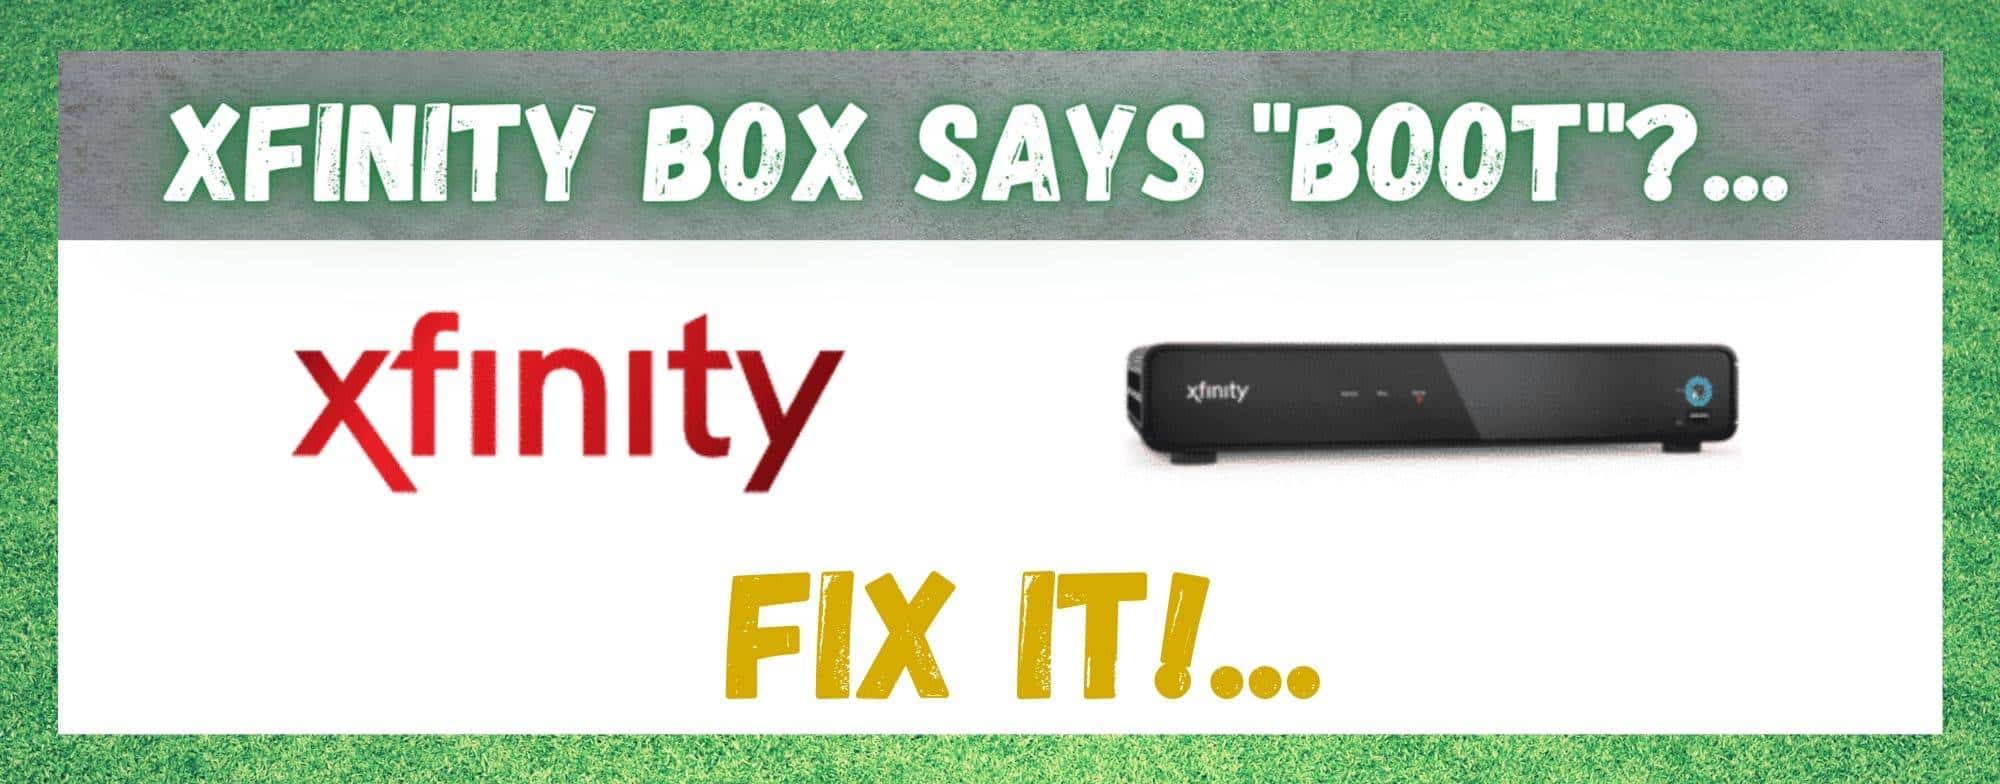 Xfinity Box Boot کہتے ہیں: ٹھیک کرنے کے 4 طریقے